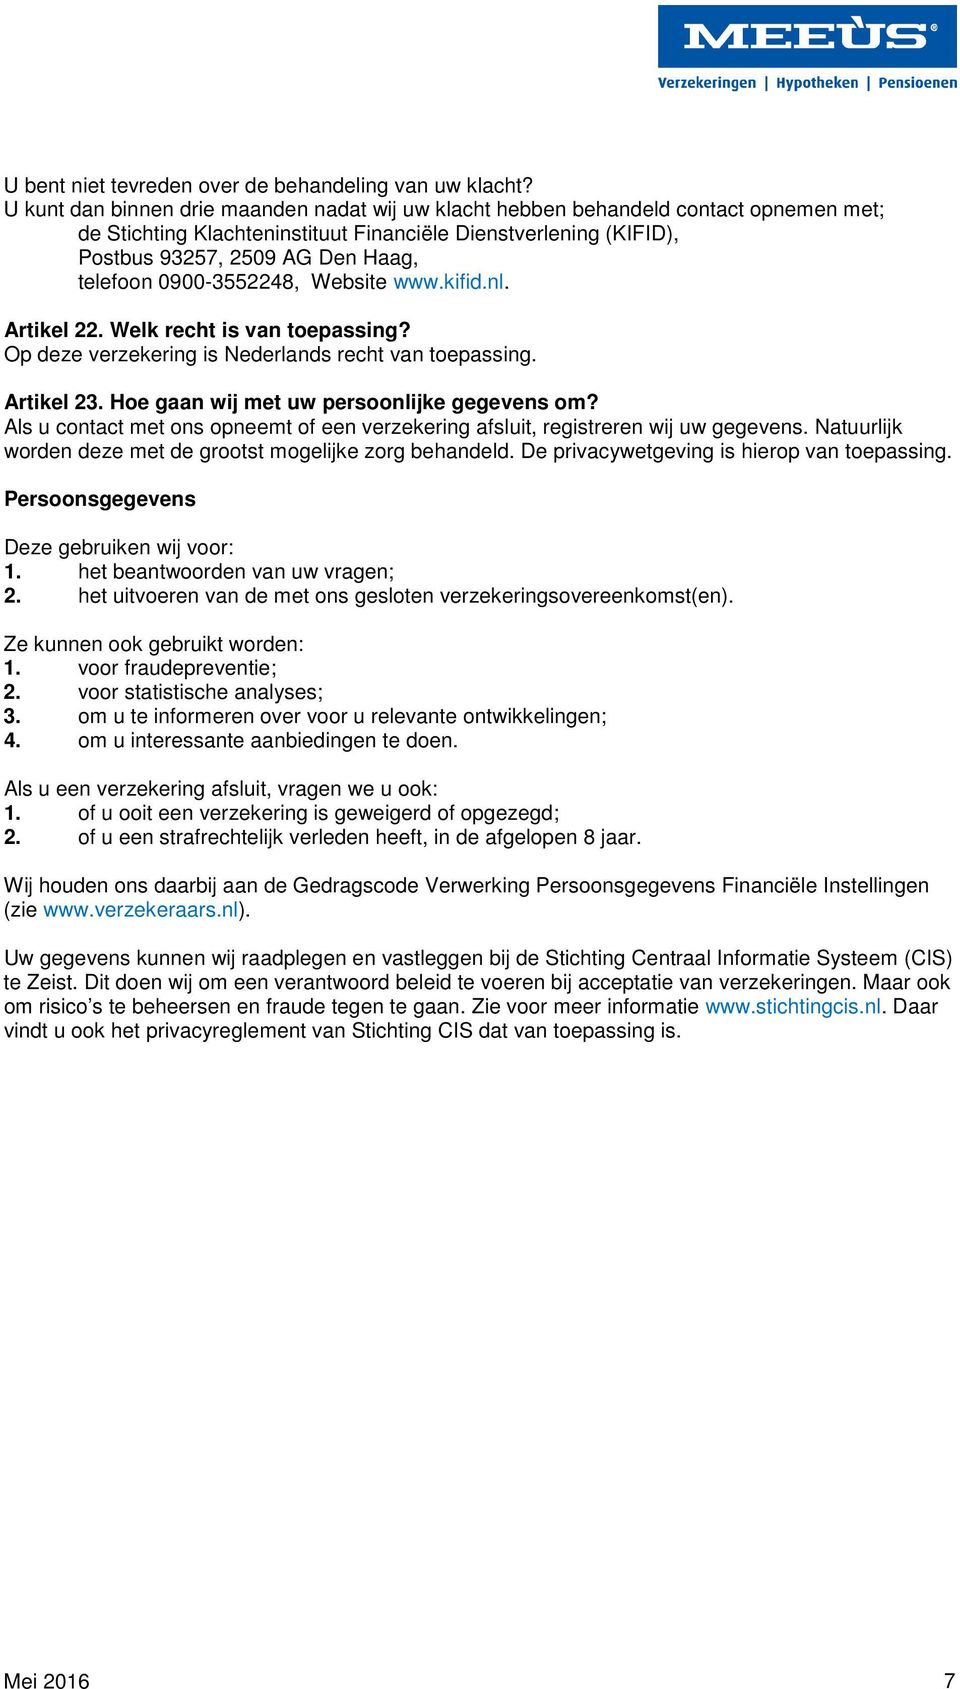 0900-3552248, Website www.kifid.nl. Artikel 22. Welk recht is van toepassing? Op deze verzekering is Nederlands recht van toepassing. Artikel 23. Hoe gaan wij met uw persoonlijke gegevens om?